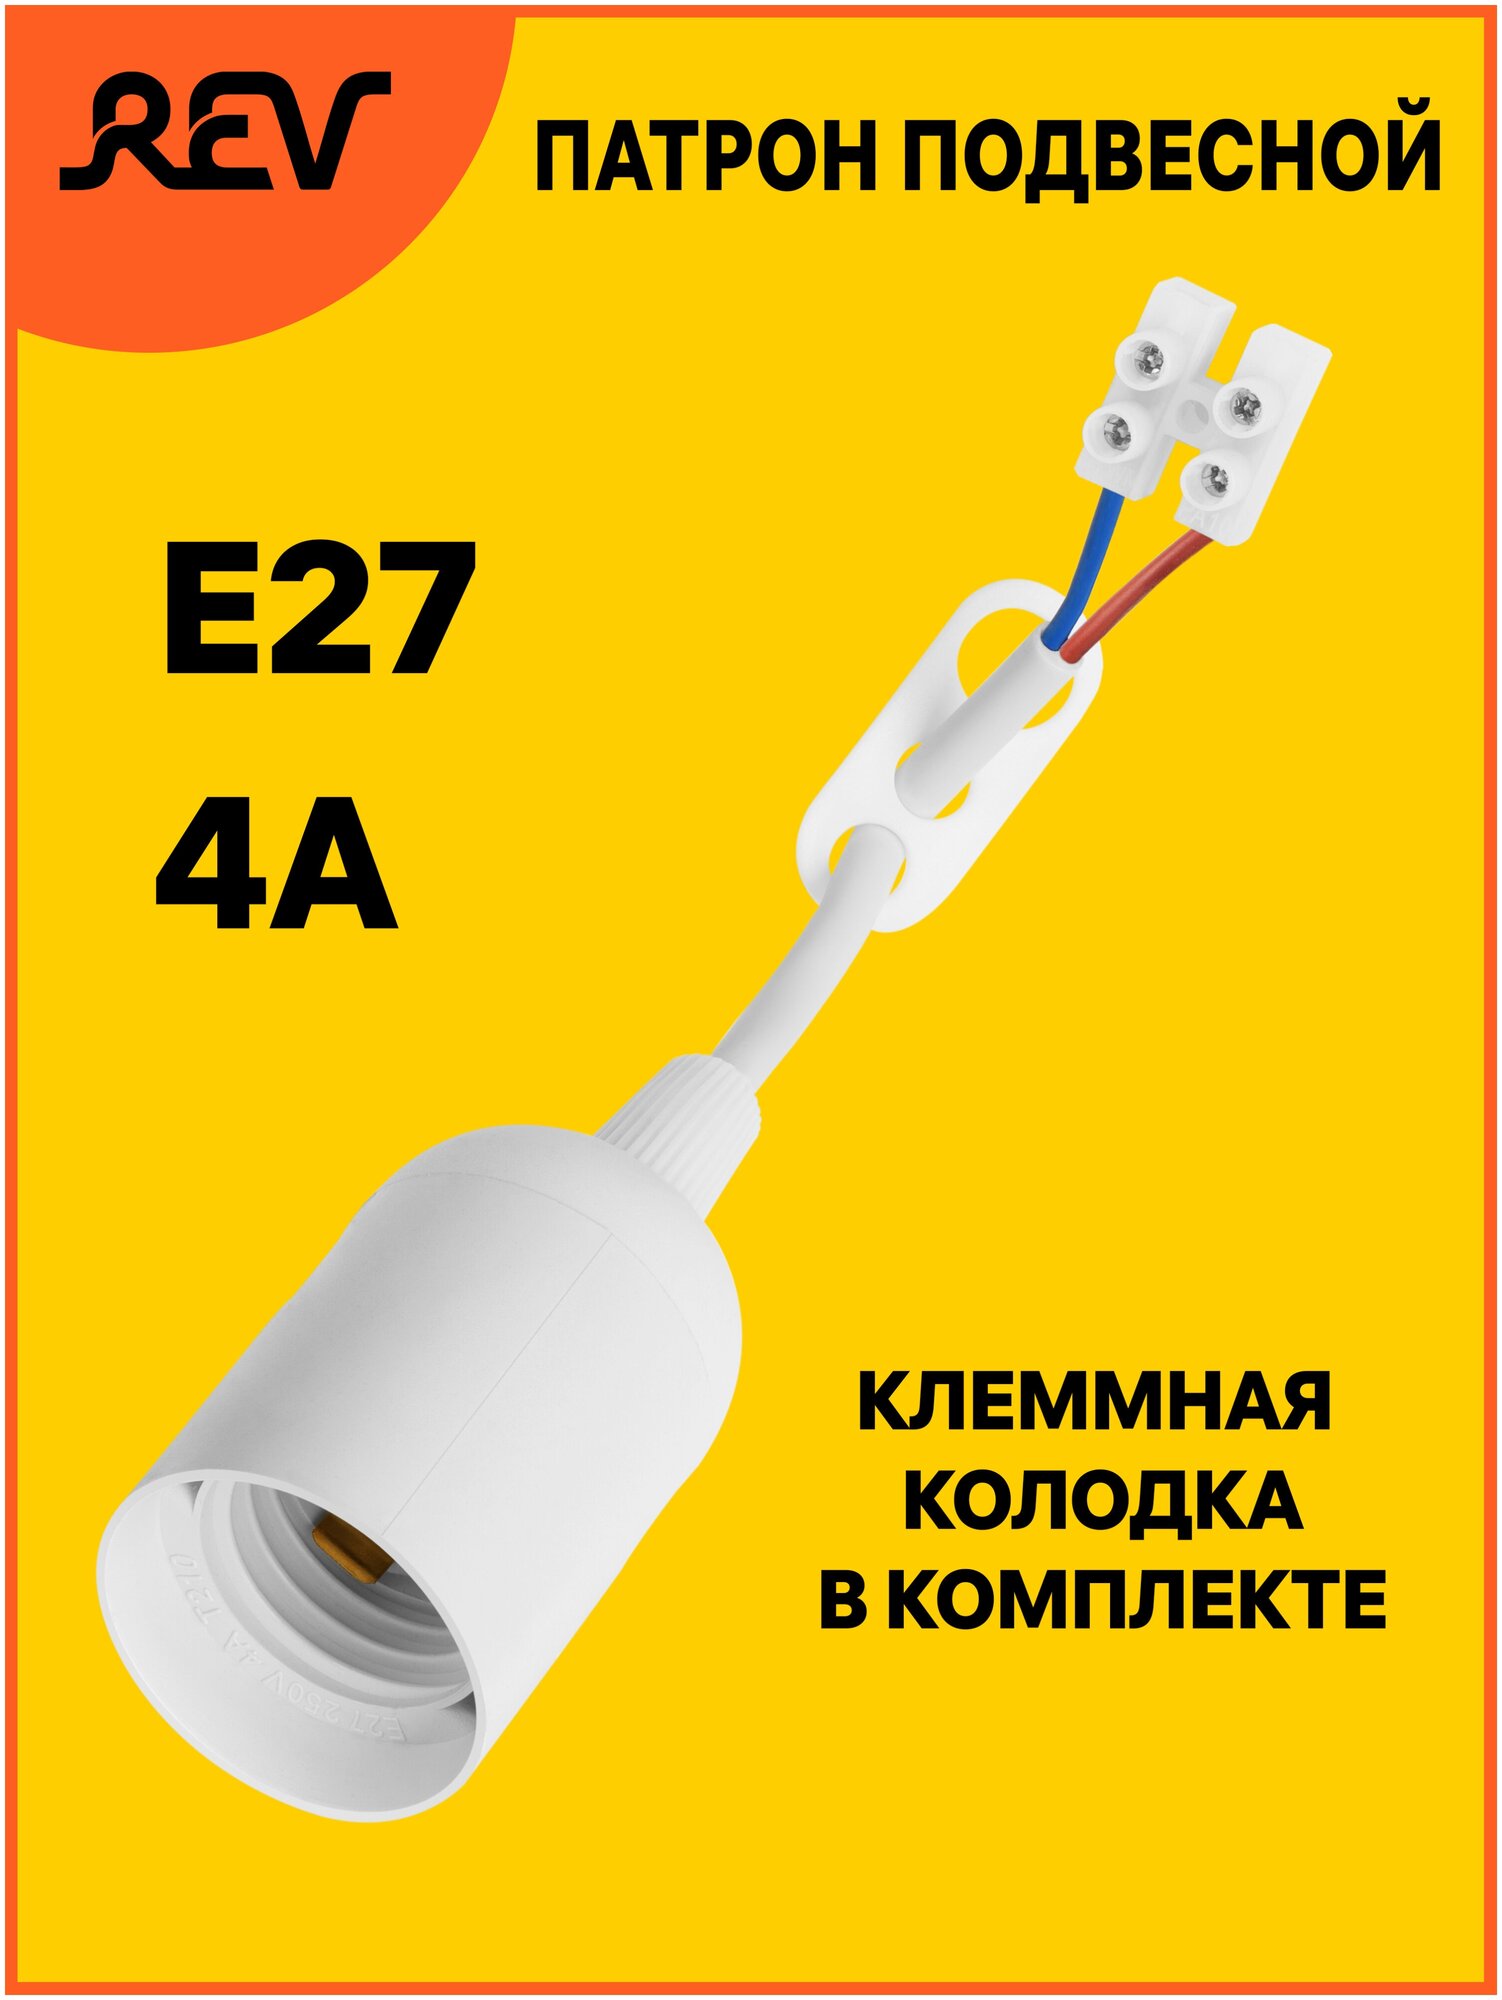 Патрон для лампы подвесной Е27 4А белый Rev 24628 2